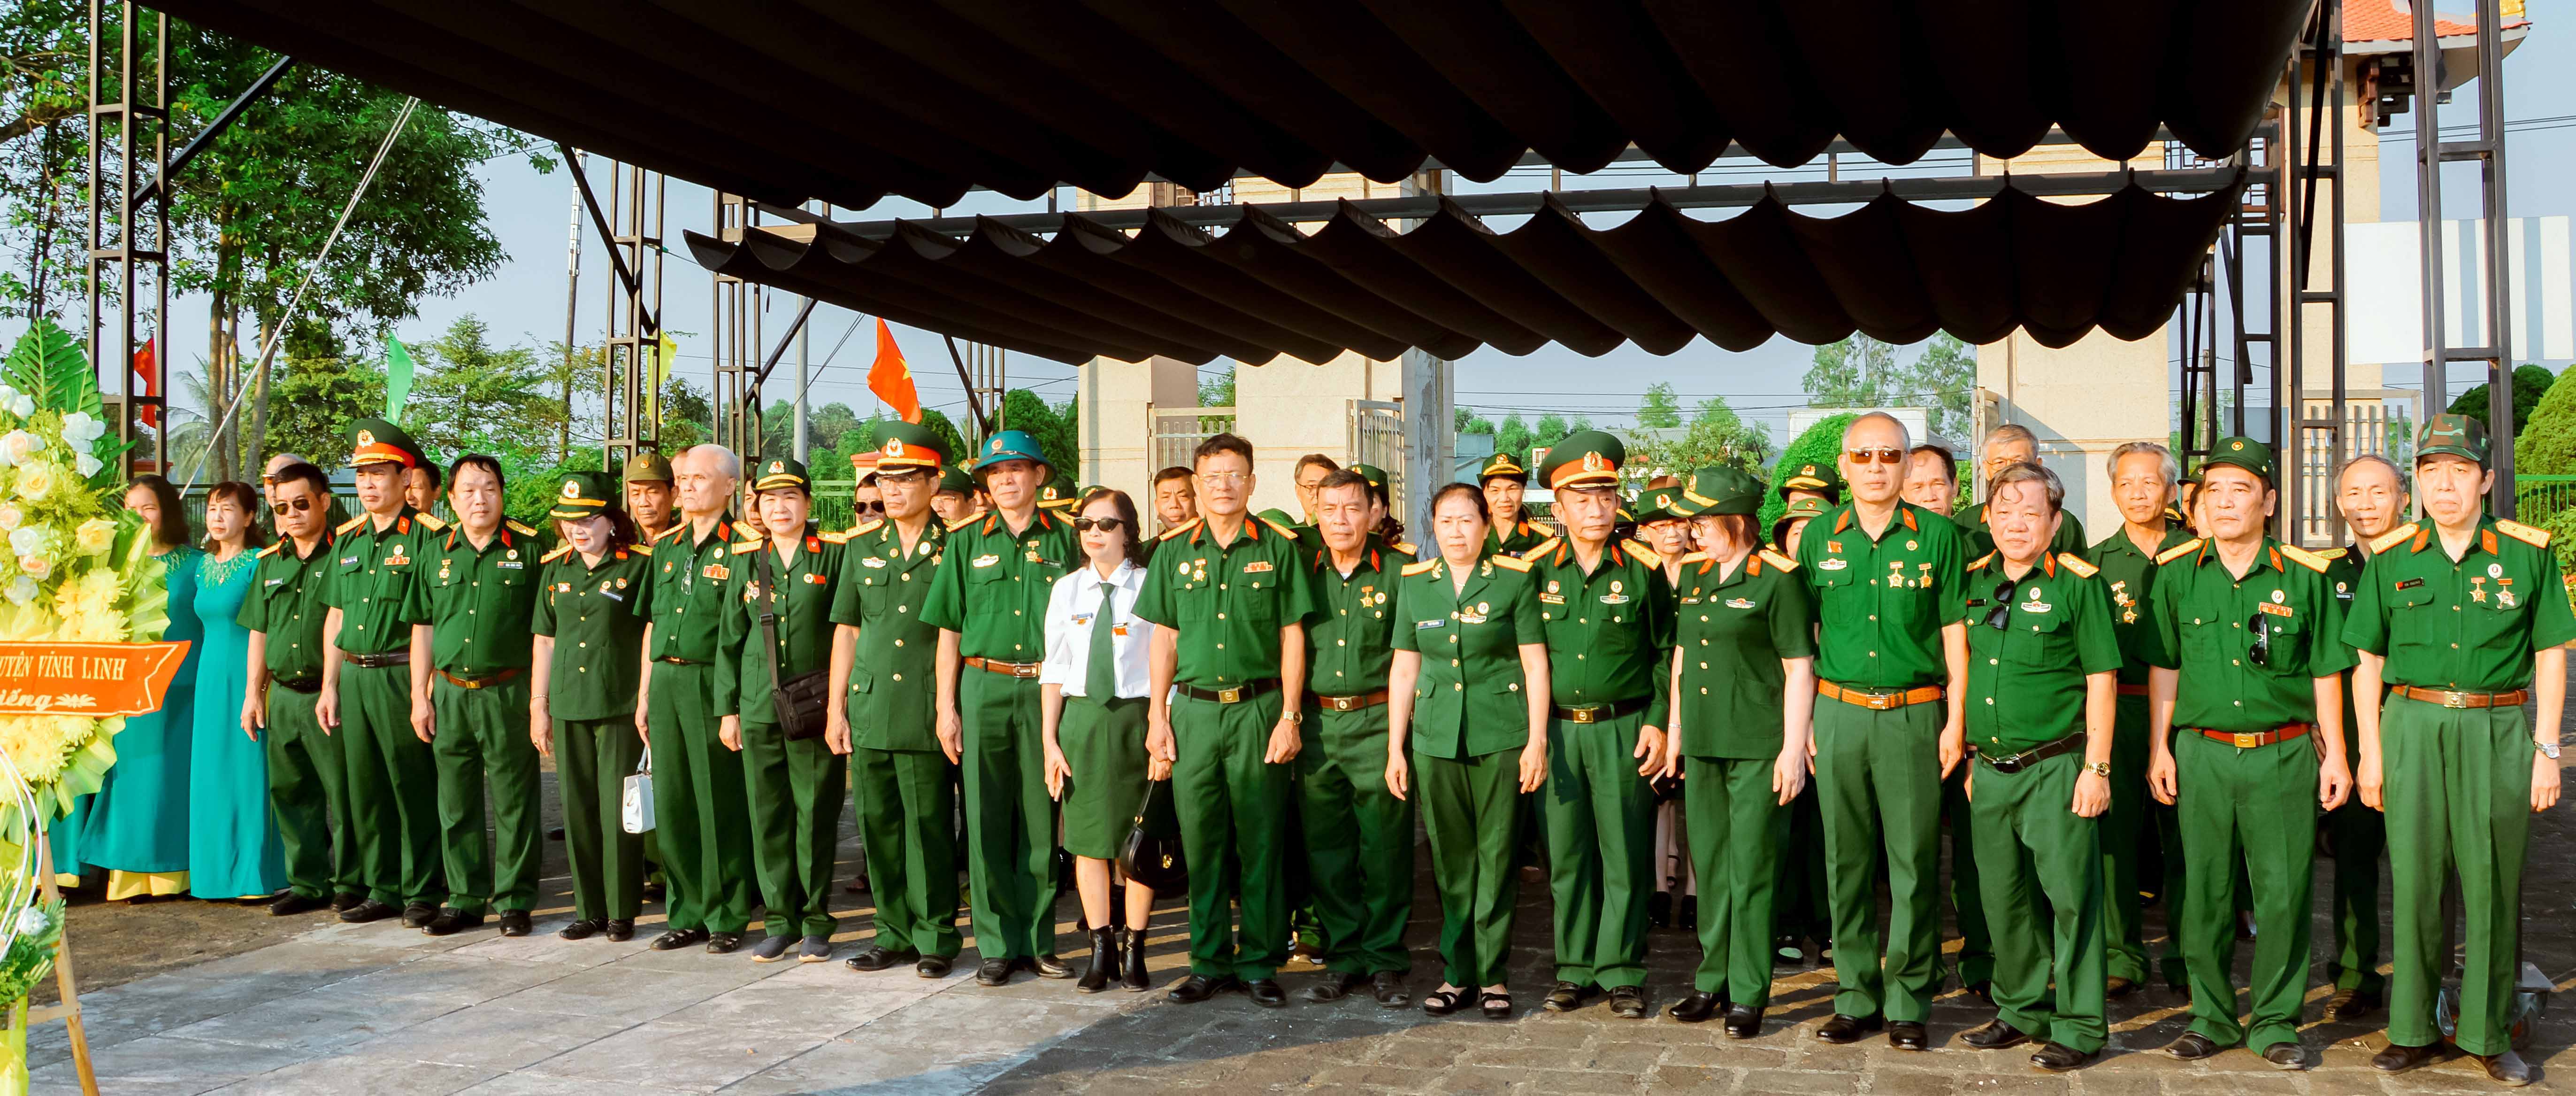 Ban LL truyền thống Trường Sơn huyện Vĩnh Linh Kỷ niệm 65 năm ngày mở đường Trường Sơn